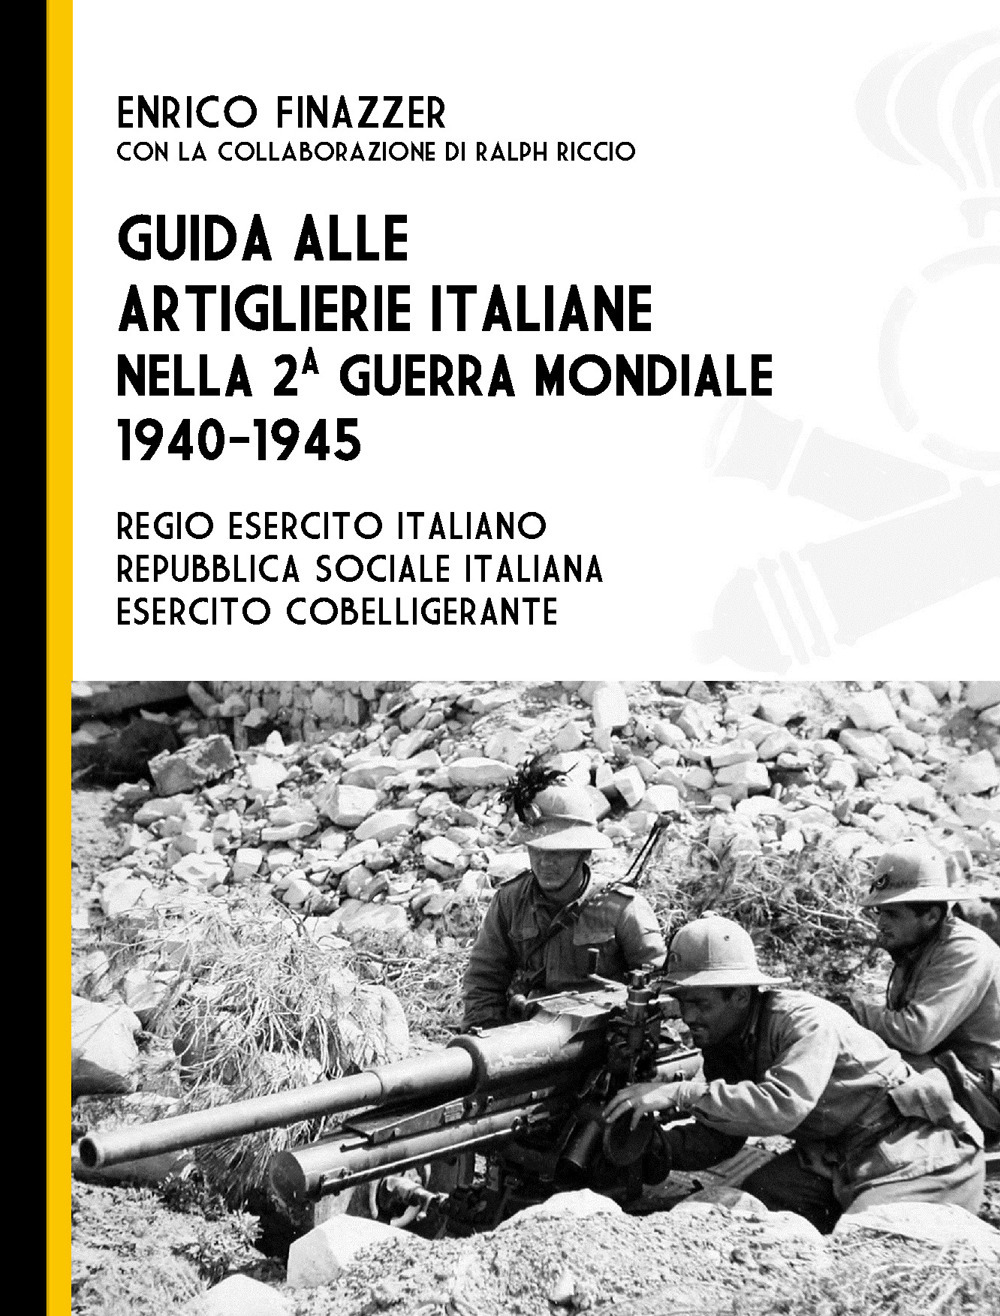 Image of Guida alle artiglierie italiane nella seconda guerra mondiale, 1940-1945. Regio esercito italiano, Repubblica Sociale Italiana, esercito cobelligerante